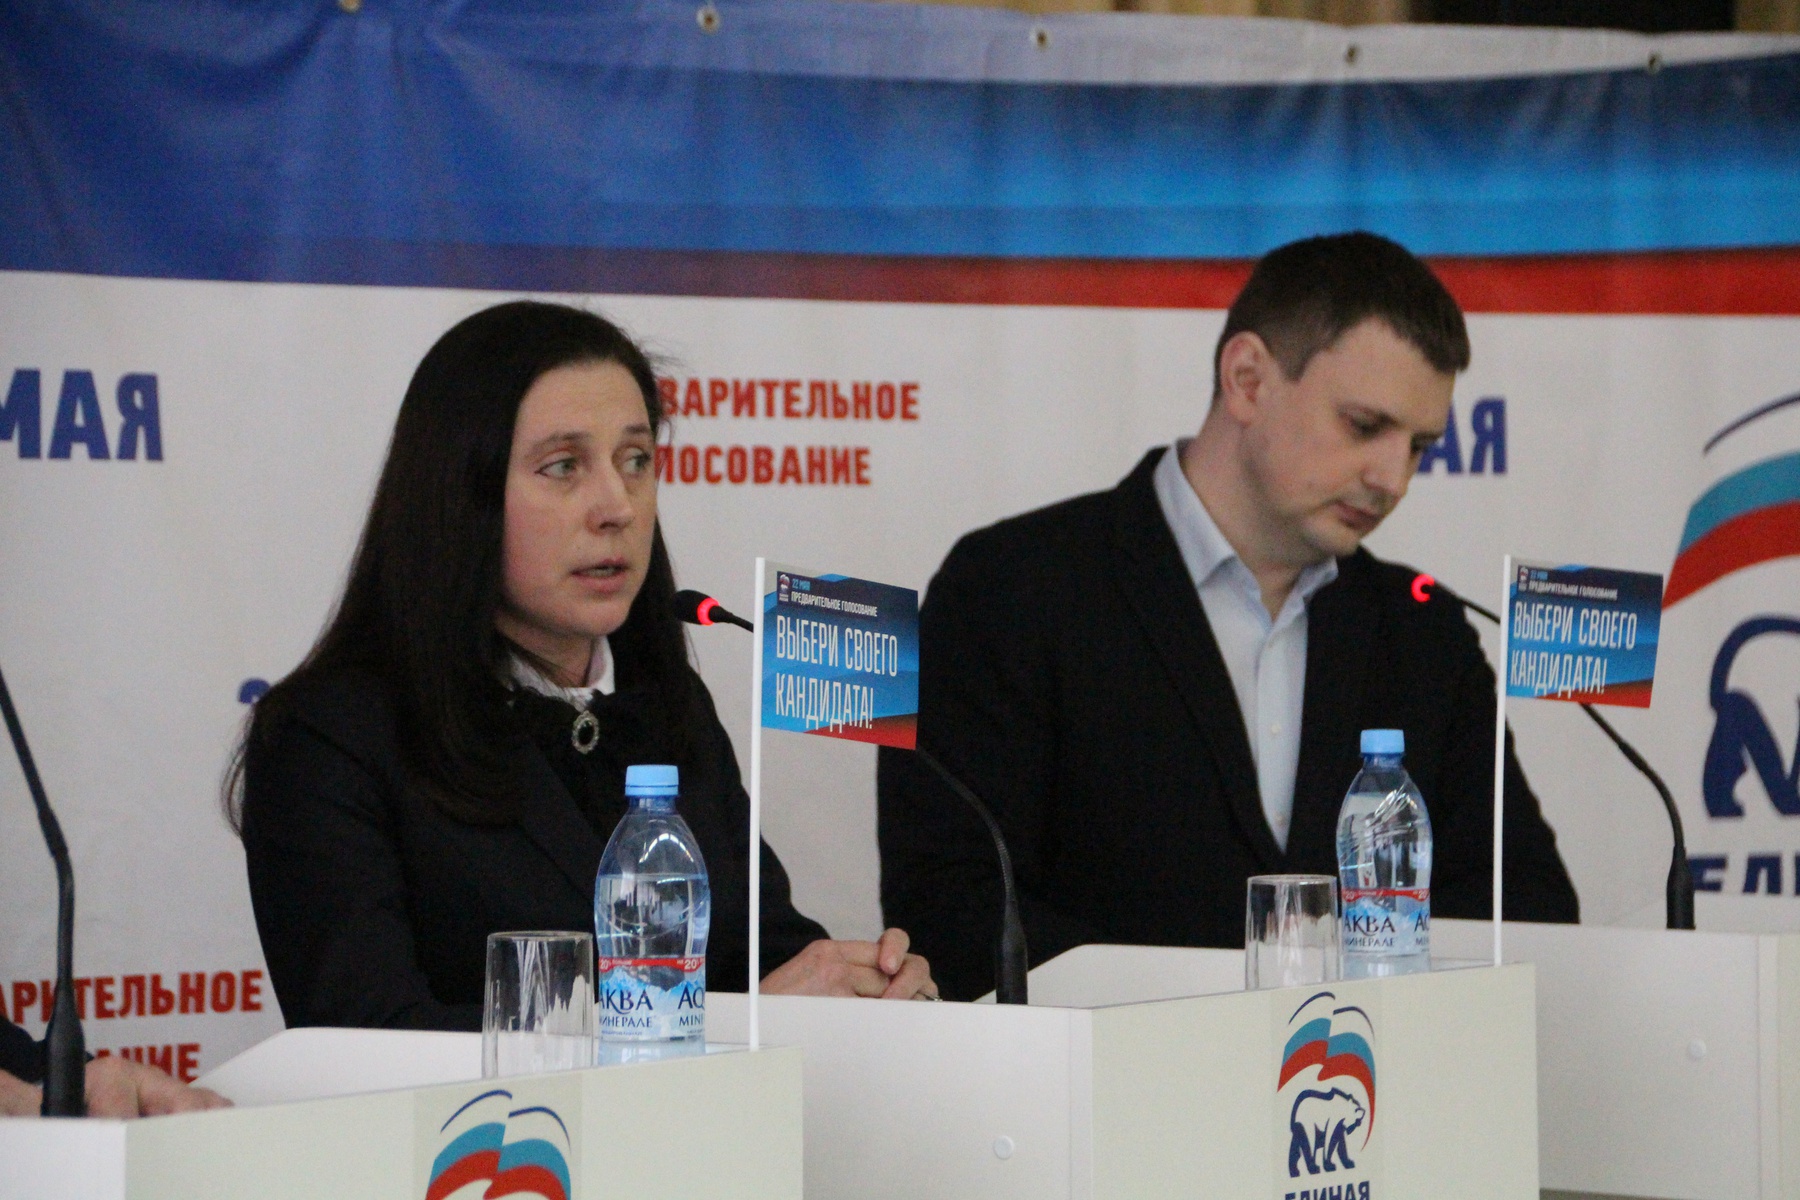   Дебаты участников предварительного голосования в регионах РФ. Тула